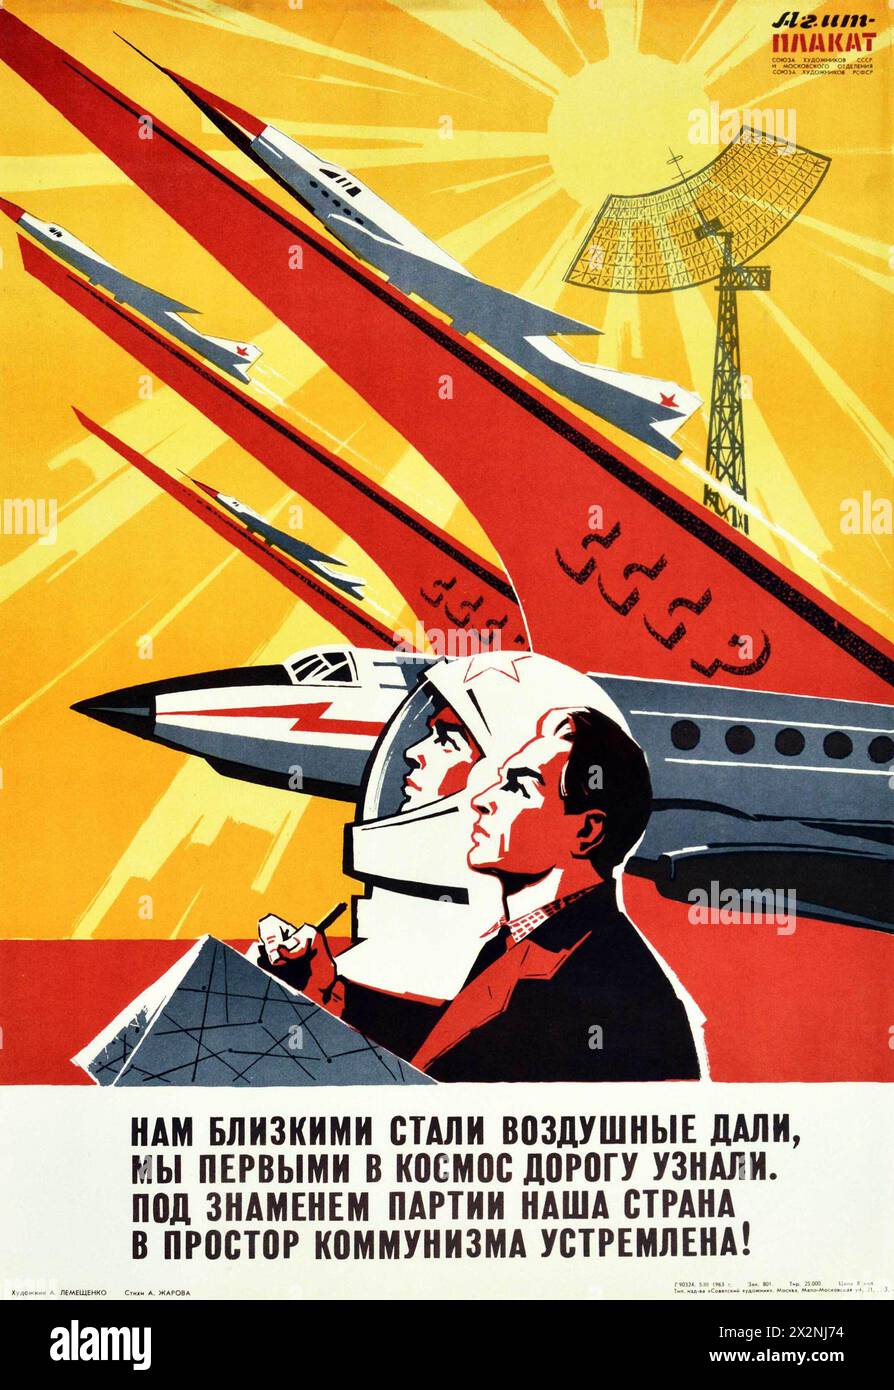 CCCP - URSS - poster della Propaganda sovietica d'epoca verso la distesa del comunismo Cosmonauta - poster della corsa allo spazio anni '1960 - opera di A. Lemeshchenko Foto Stock